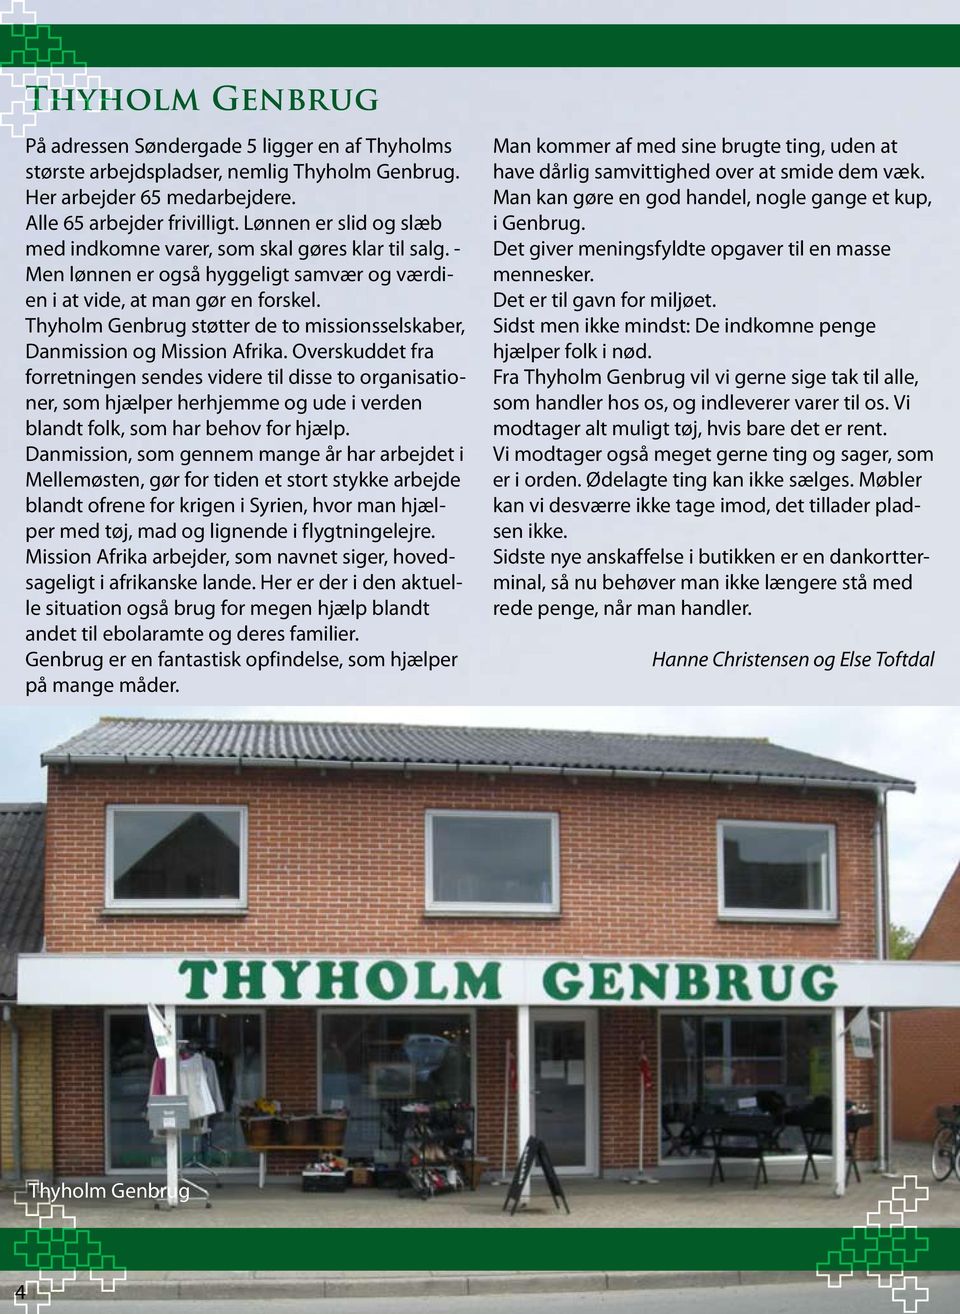 Thyholm Genbrug støtter de to missionsselskaber, Danmission og Mission Afrika.